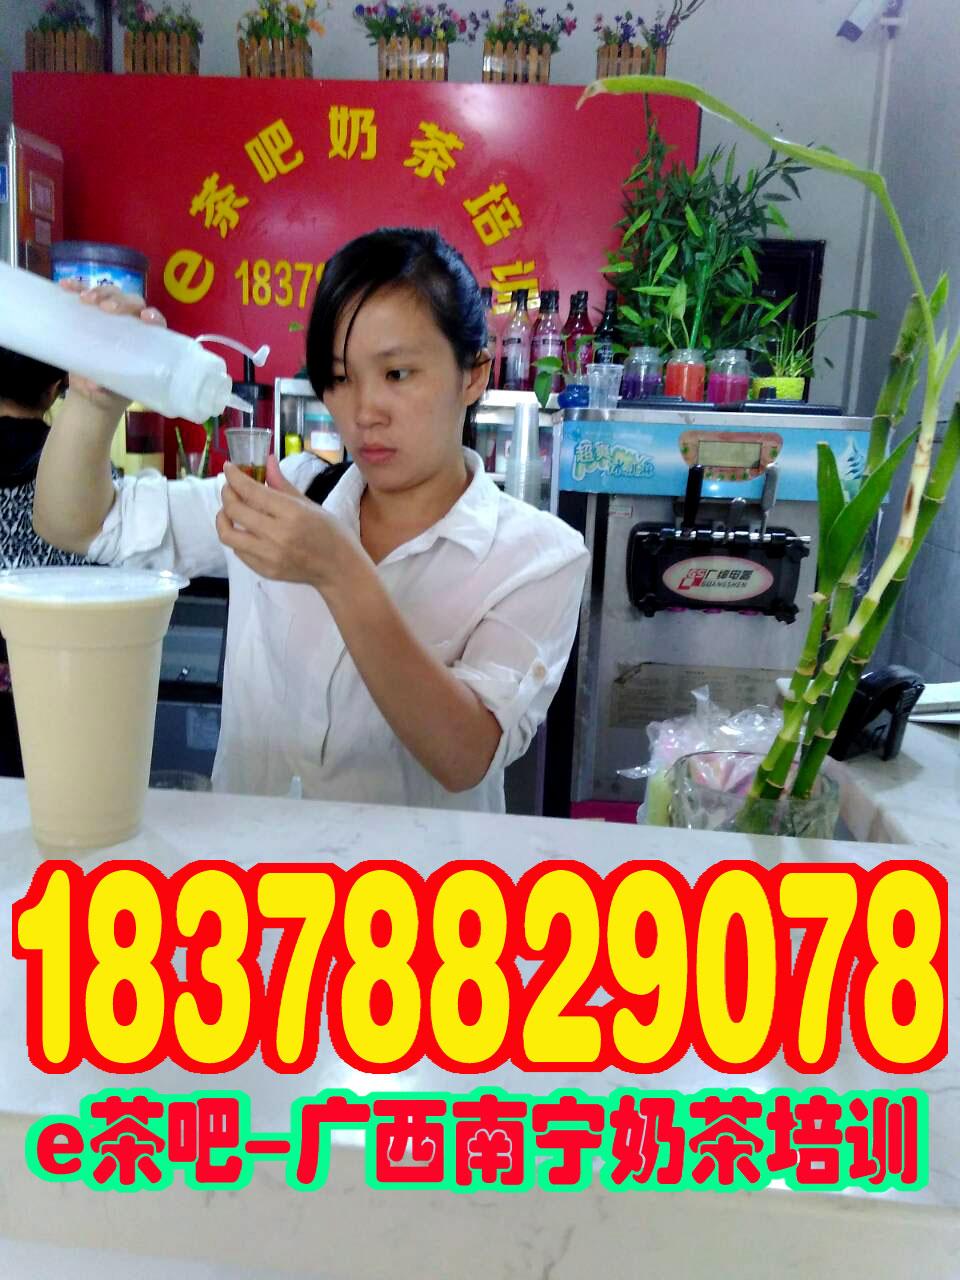 广西贵港奶茶技术培训学校培训照片/贵港奶茶培训班课